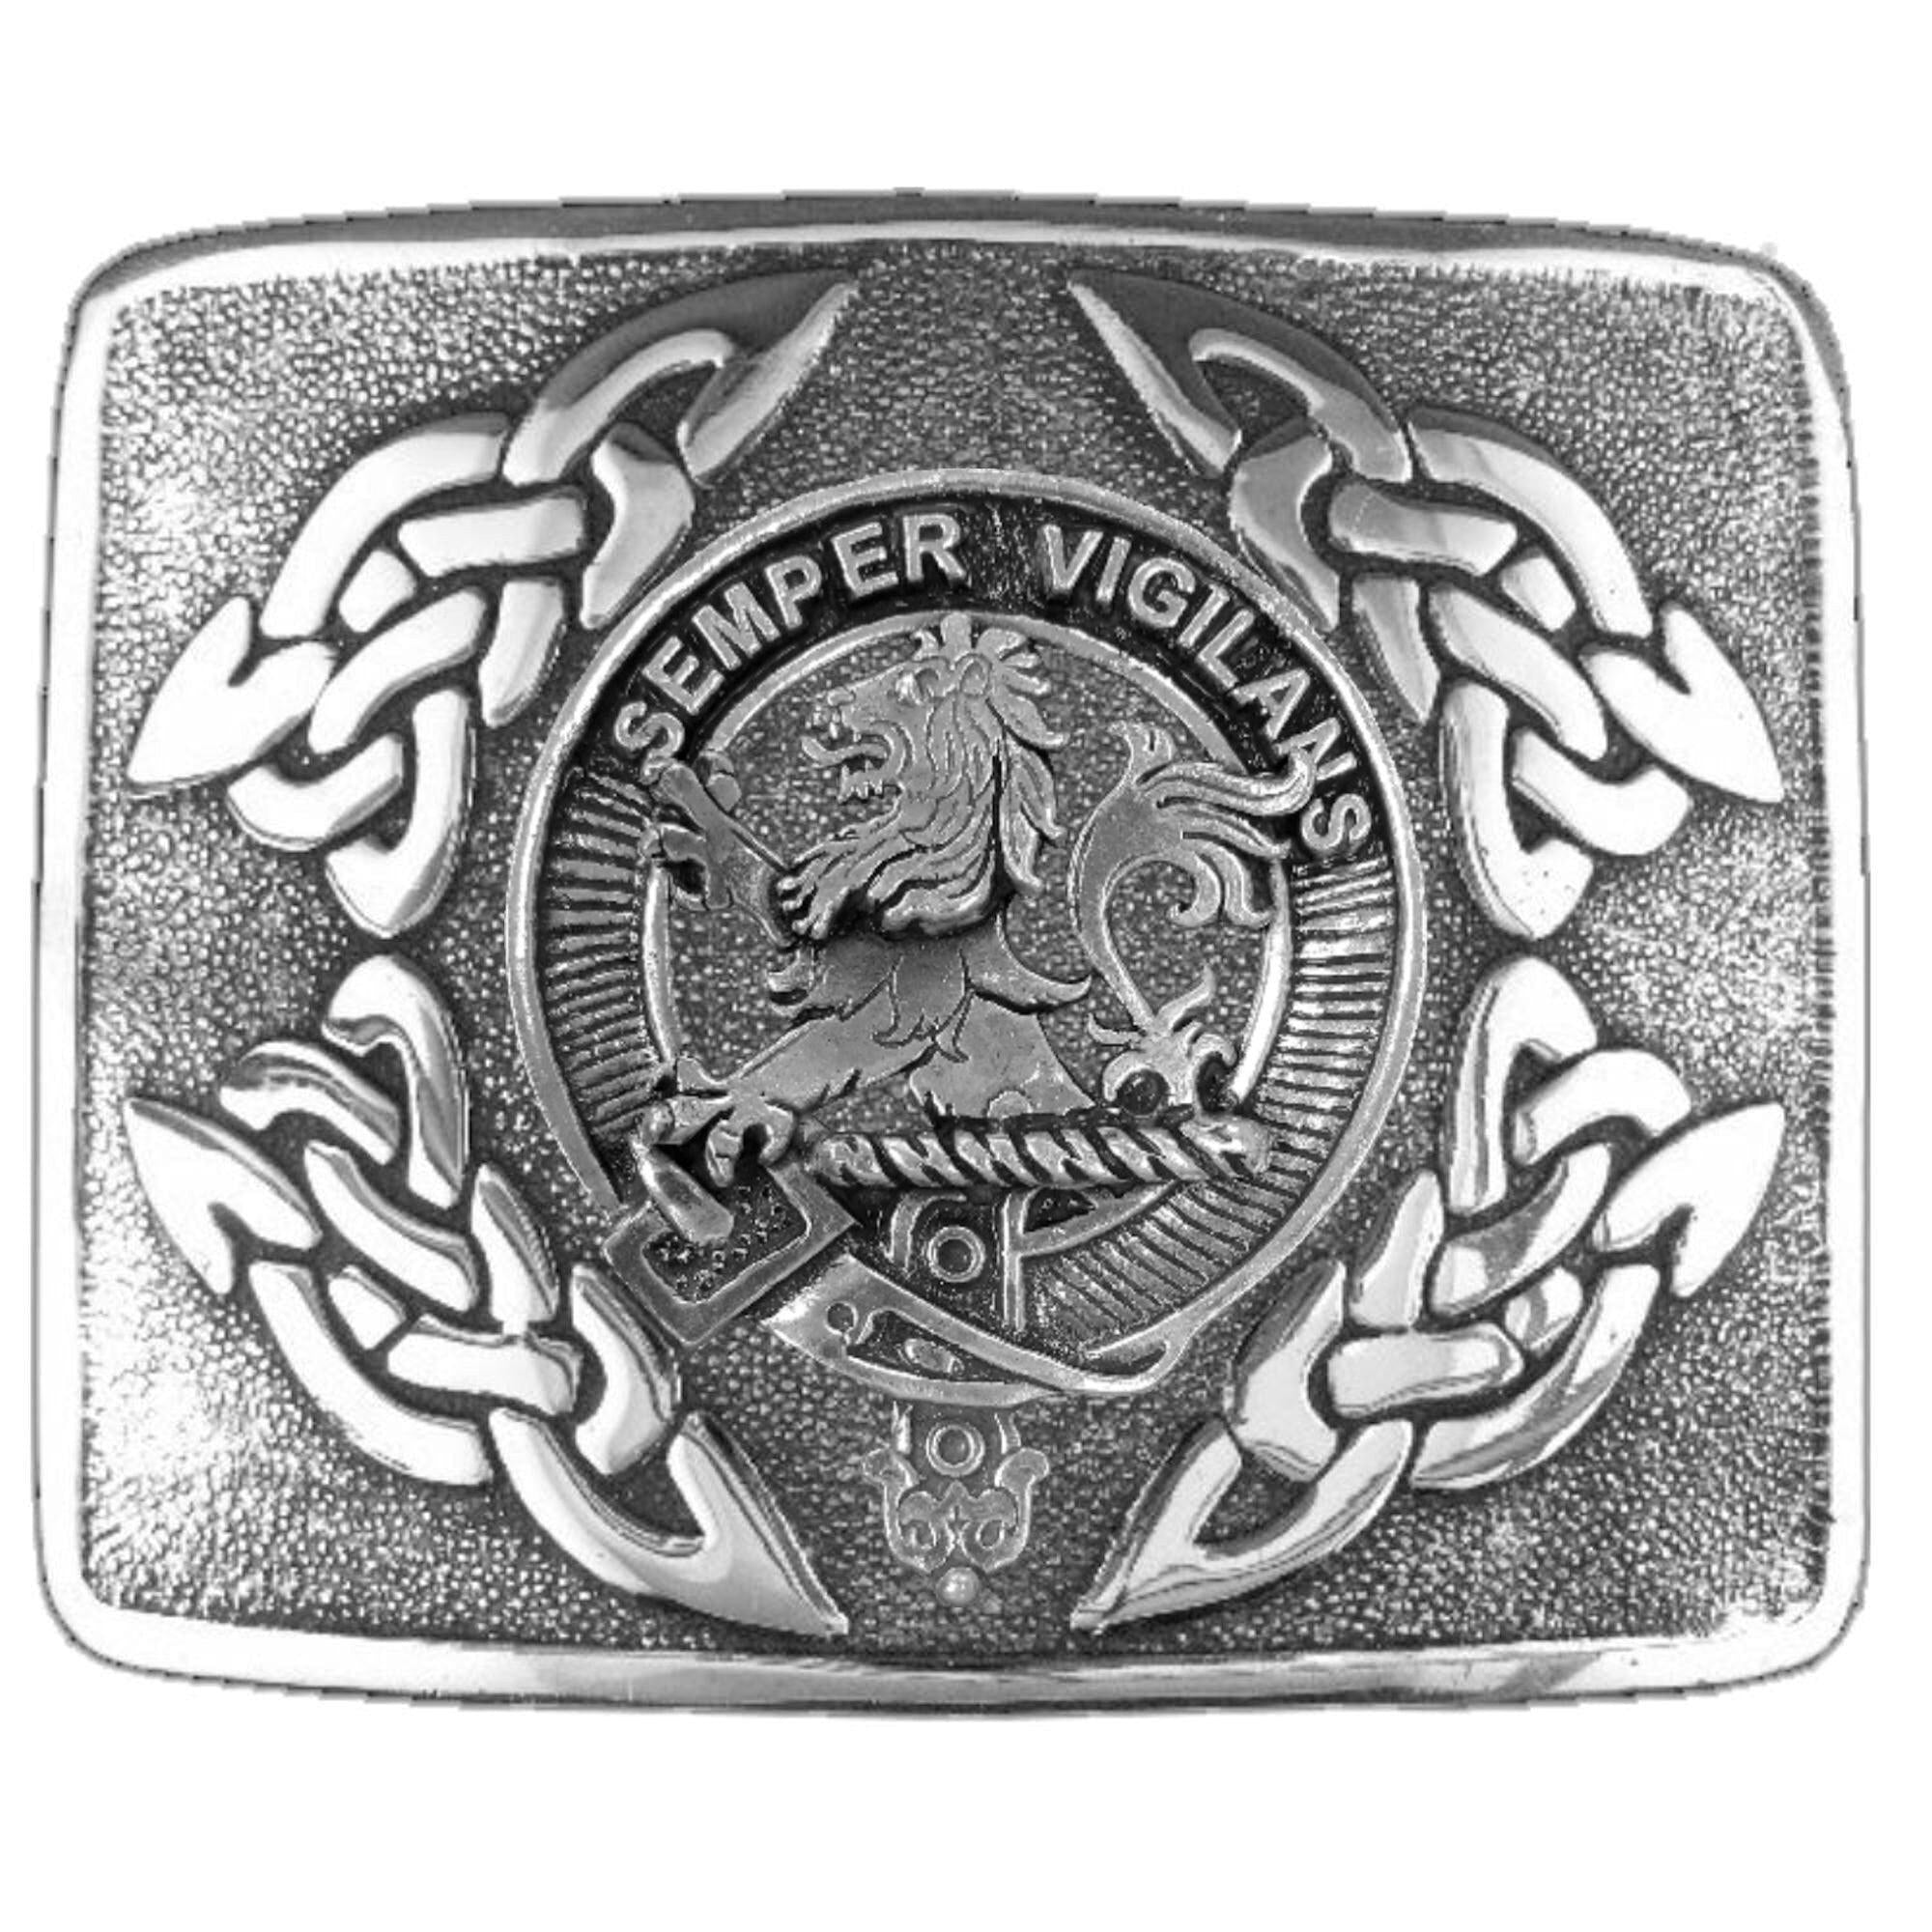 Wilson (Lion) Clan Crest Interlace Kilt Buckle, Scottish Badge